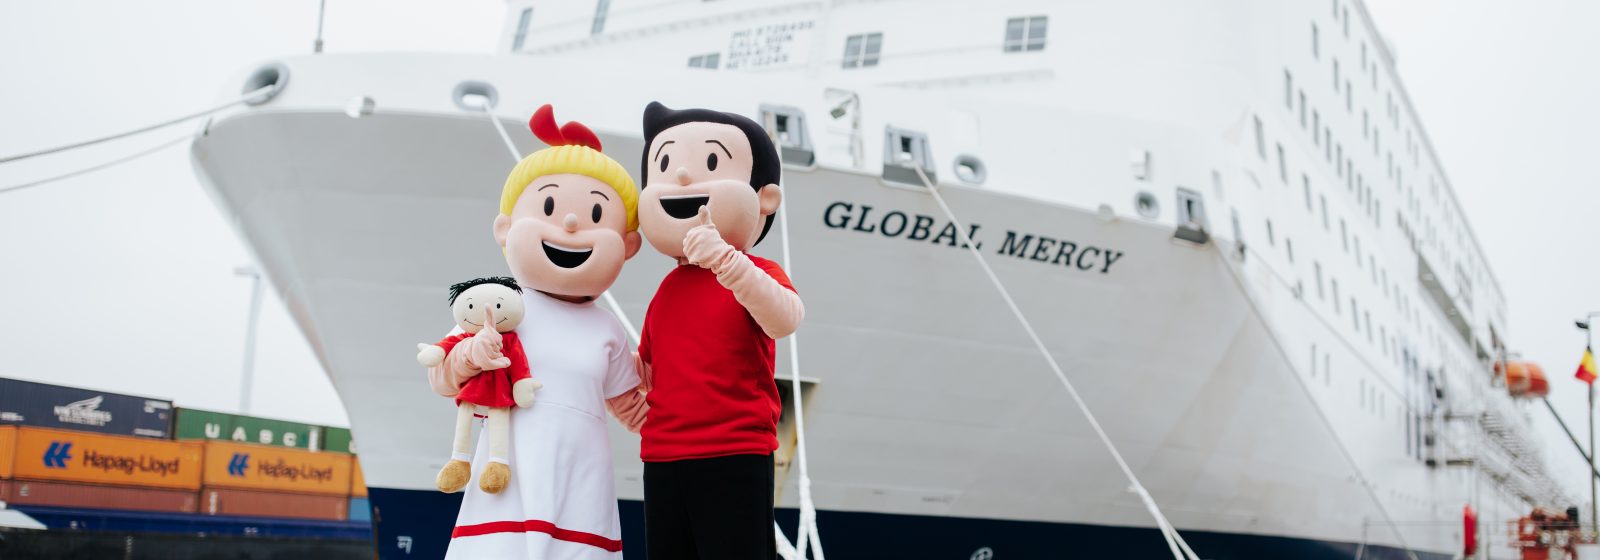 Levensgrote poppen Suske en Wiske promoten ziekenhuisschip 'Global Mercy' in Antwerpse haven